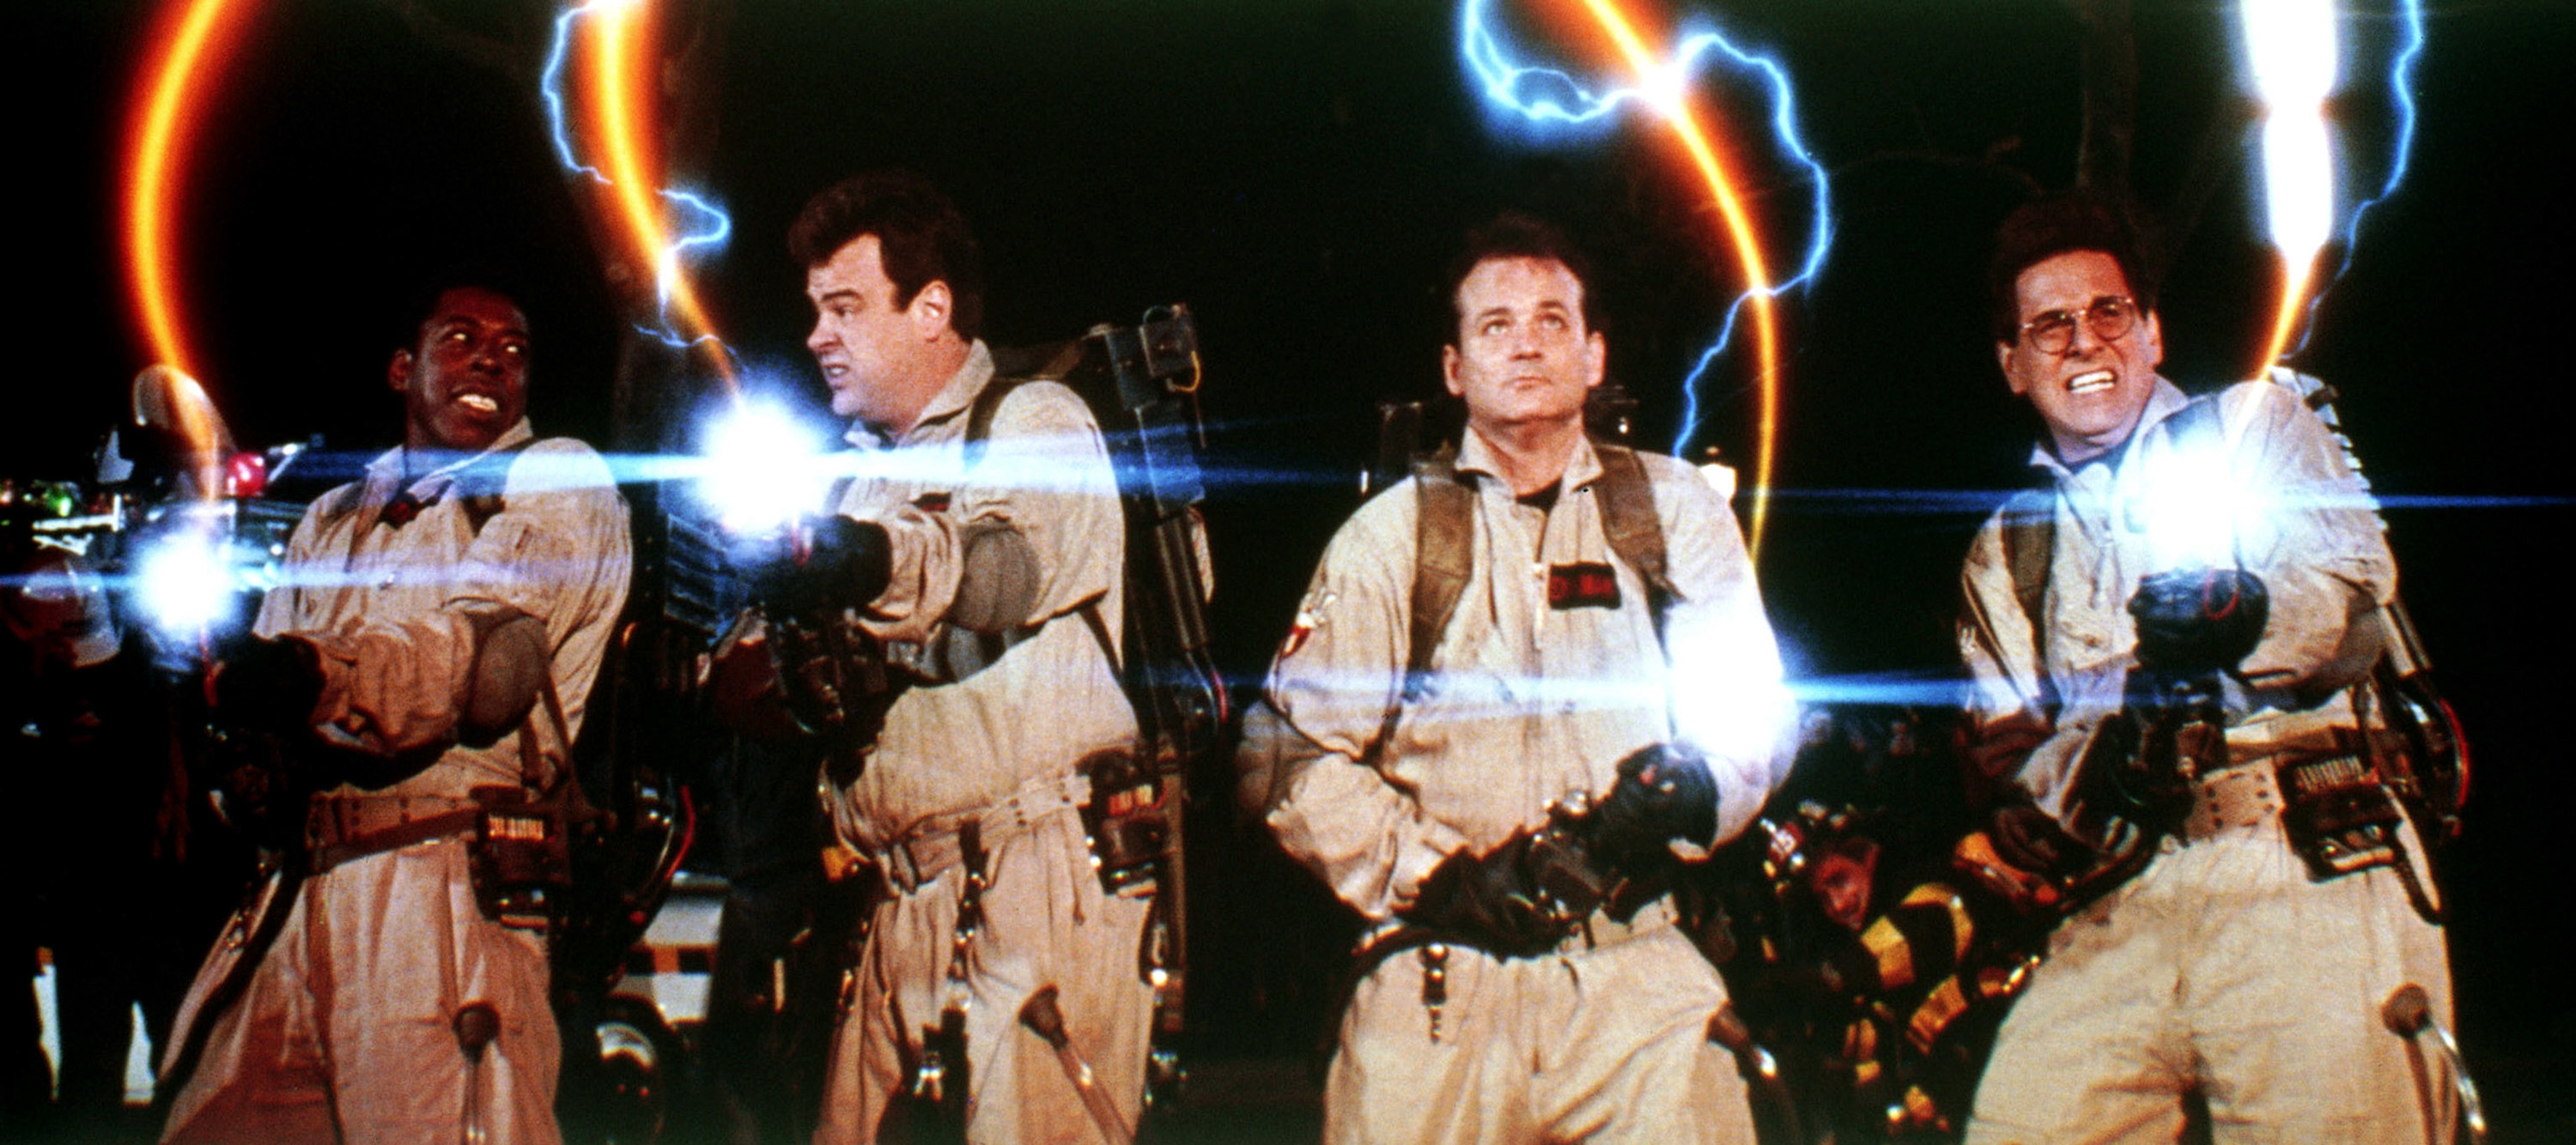 Ernie Hudson, Dan Aykroyd, Bill Murray, Harold Ramis as the Ghostbusters, blasting with their proton packs